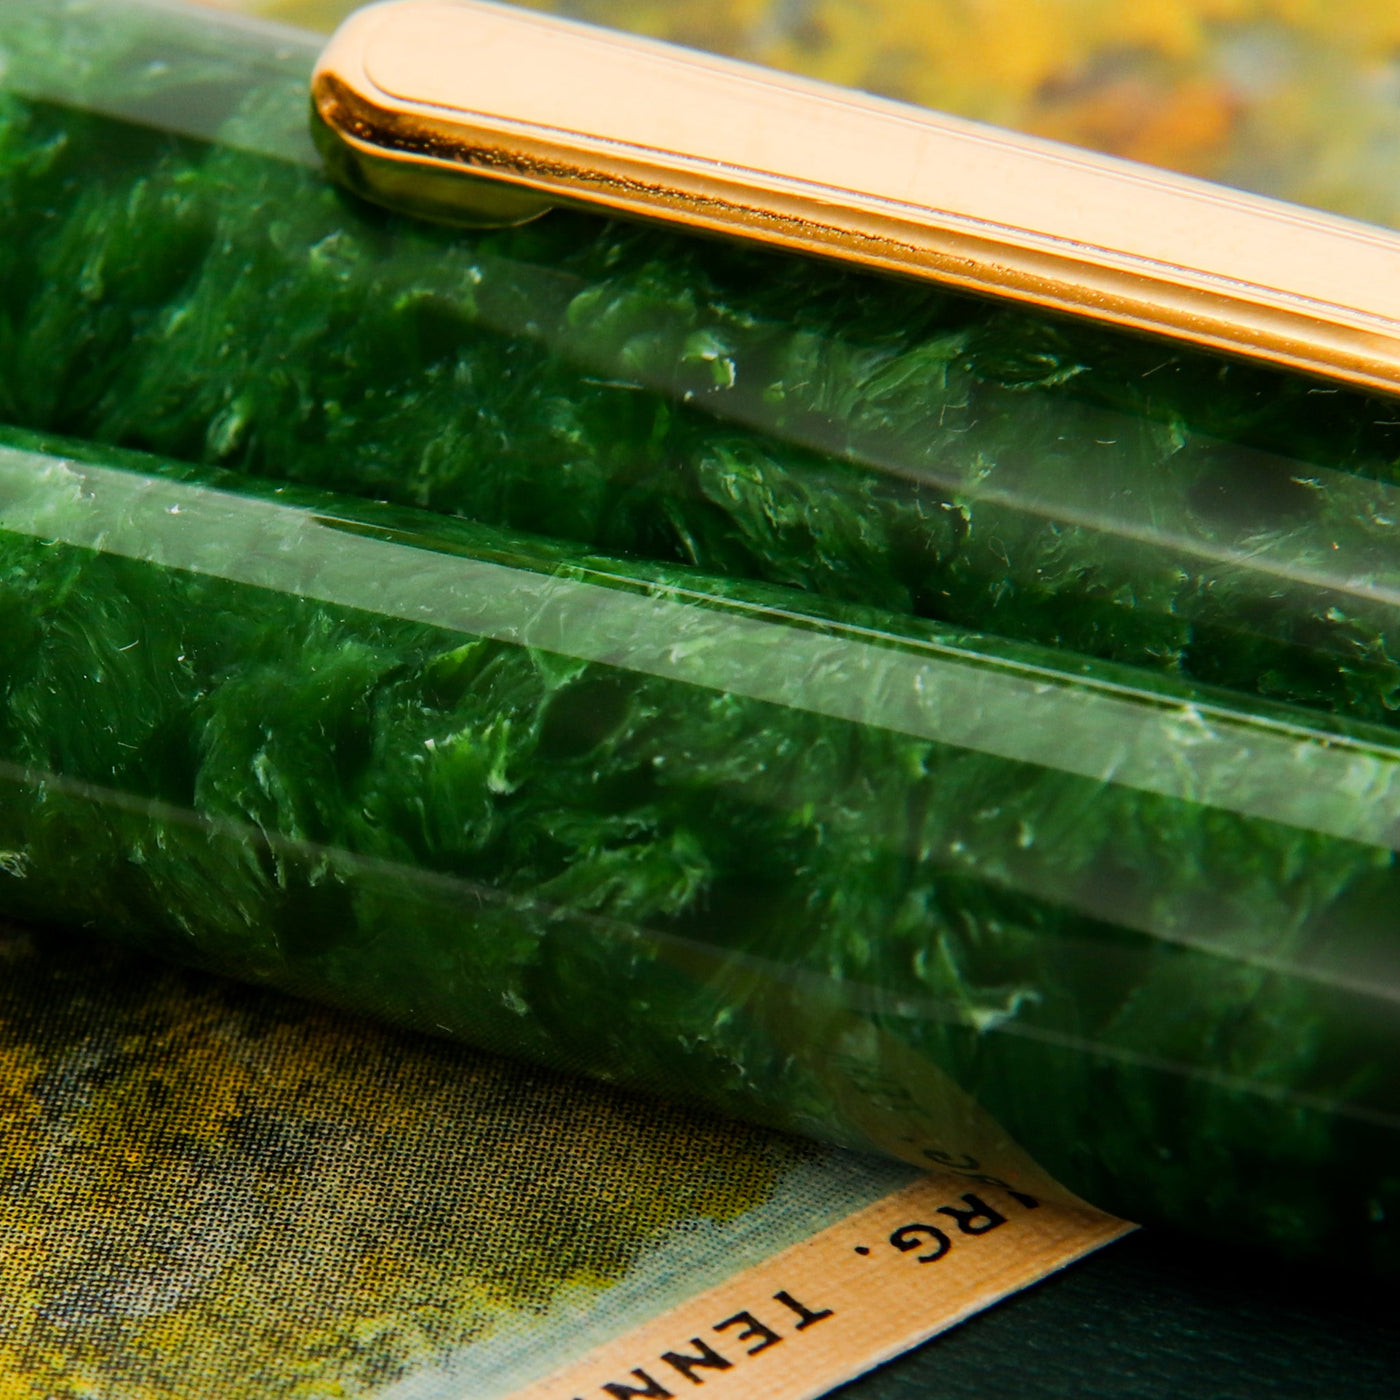 Platinum Century 3776 Jade Celluloid Fountain Pen Green Celluloid Details